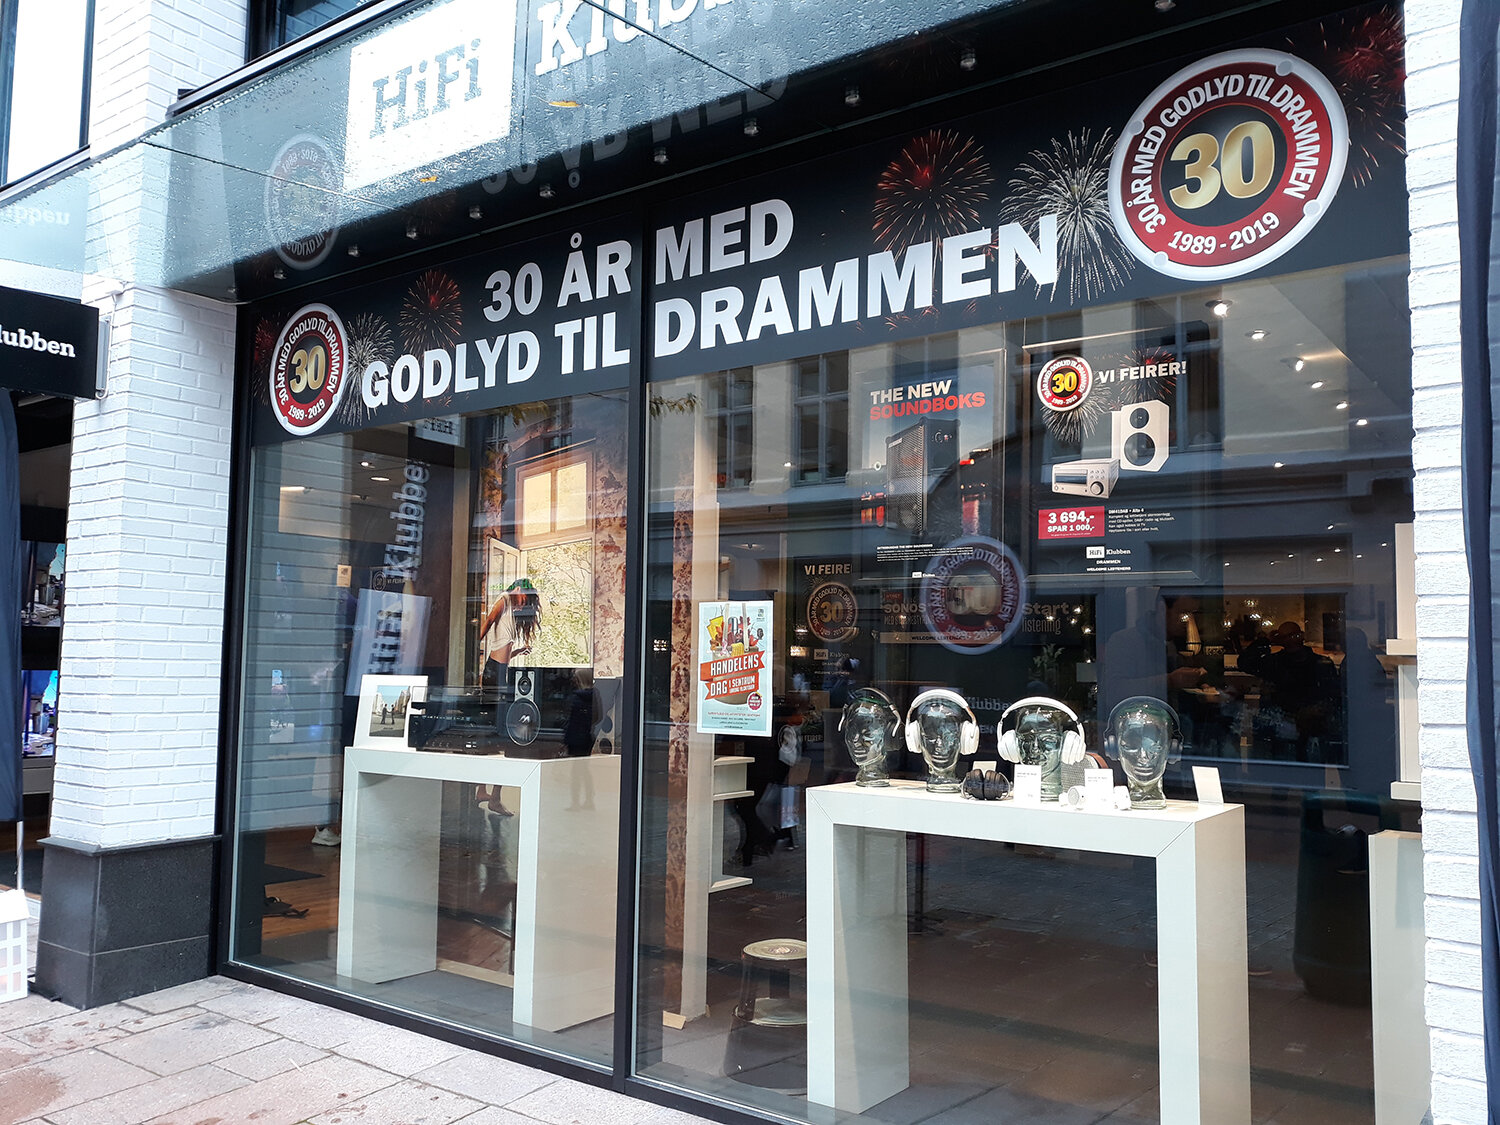  Jubileumsbudskapet ble godt synlig på fasaden ut mot gågata i Drammen. 